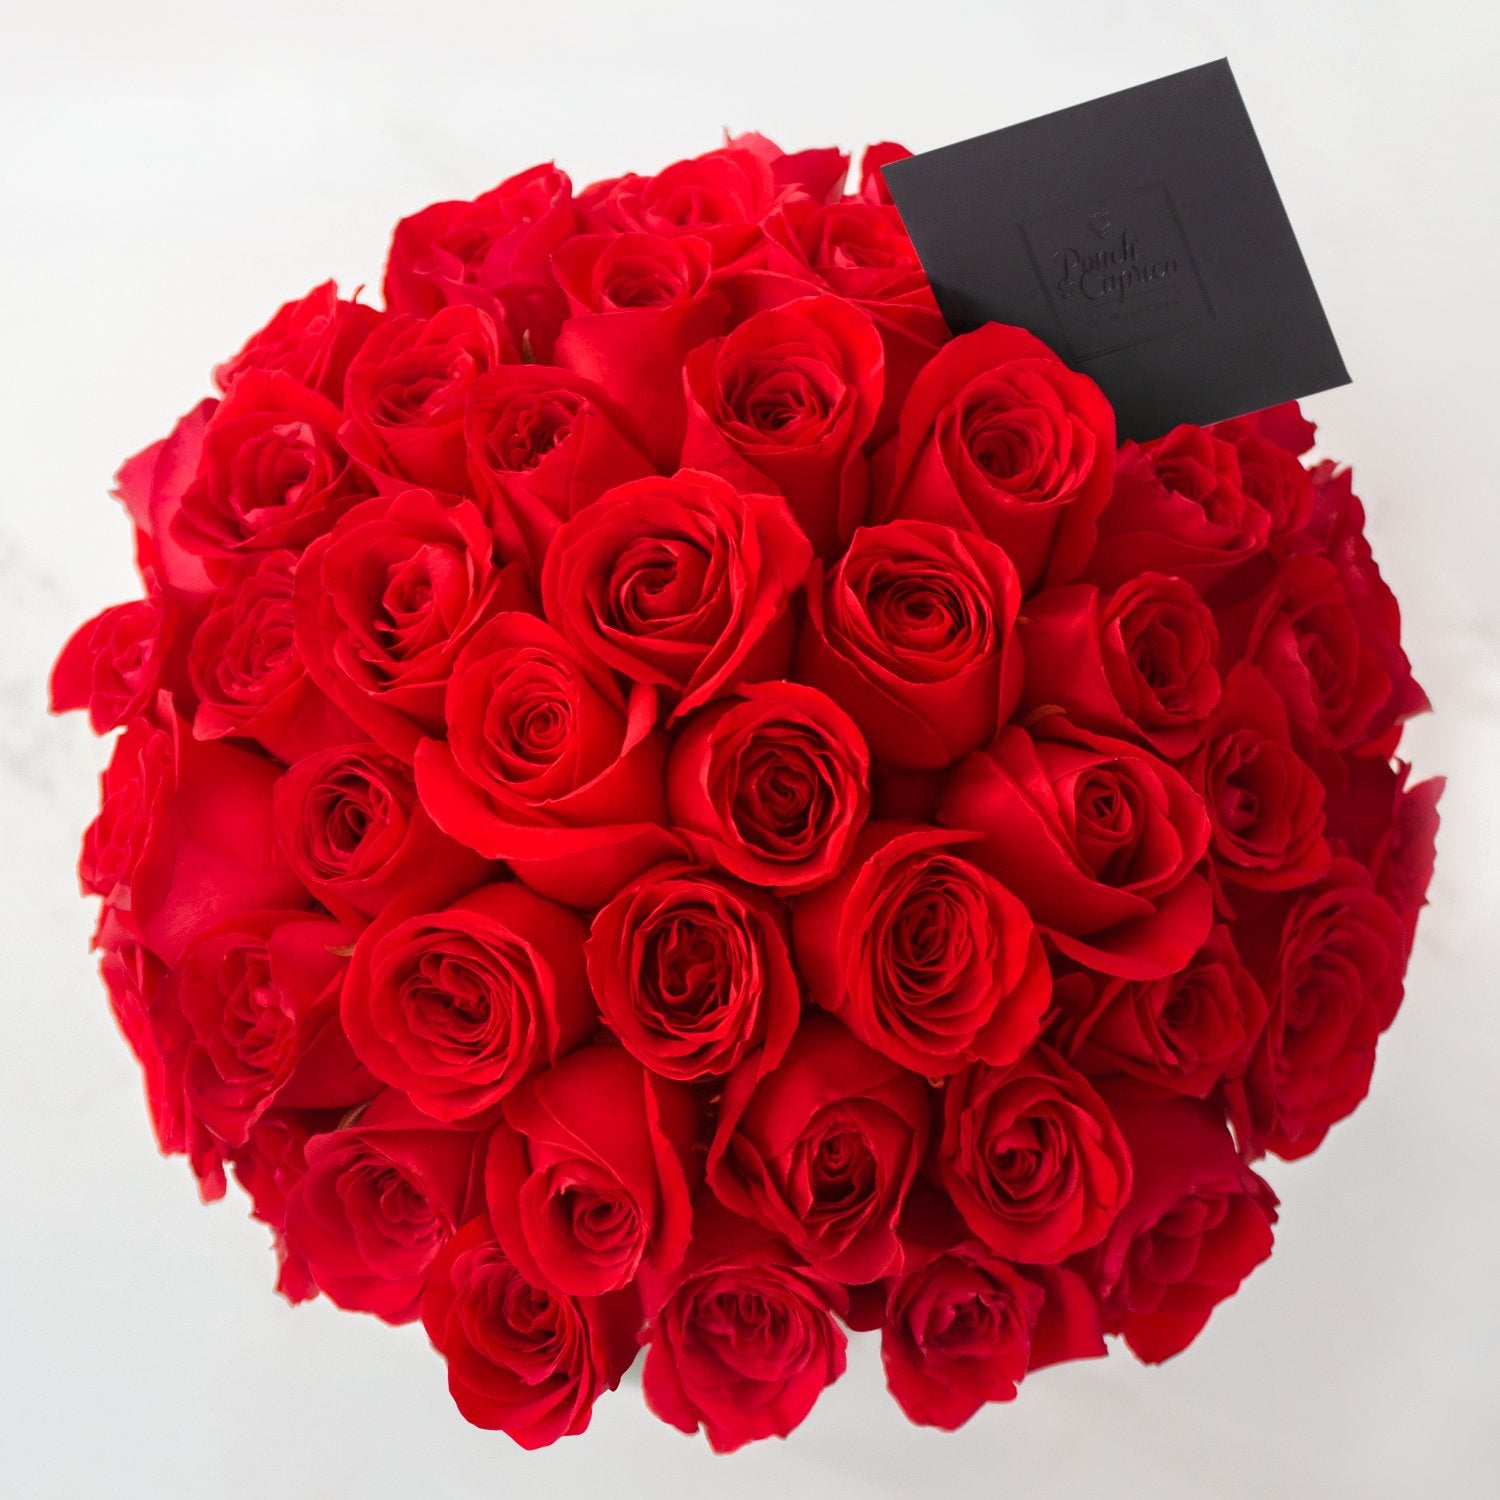 50 rosas (color de rosas a elegir) en florero de vidrio | Globos y Regalos Teleglobos.com.mx.